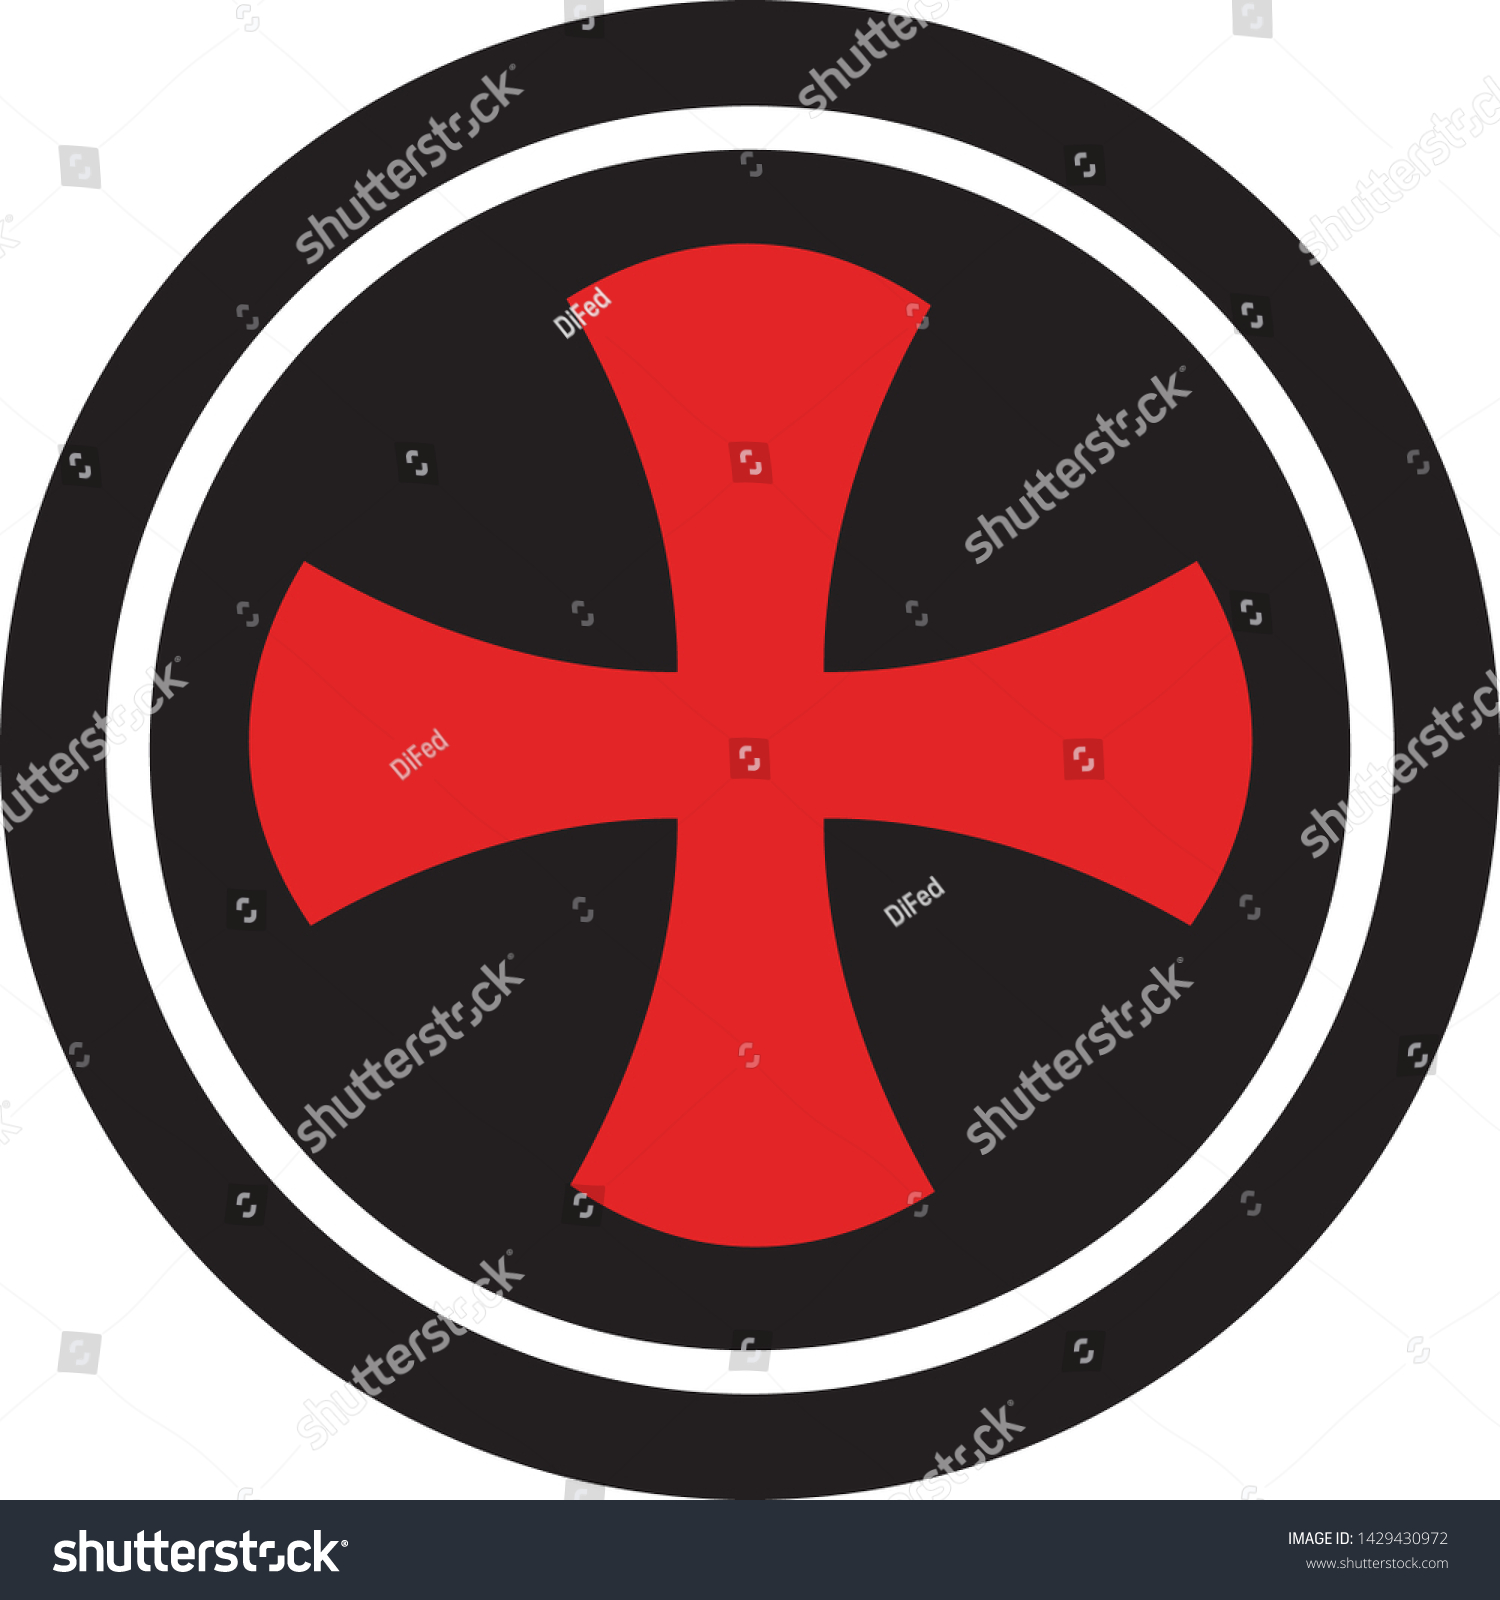 Templar Cross Shield Logo Vector Graphics Stock Vector Royalty Free Shutterstock